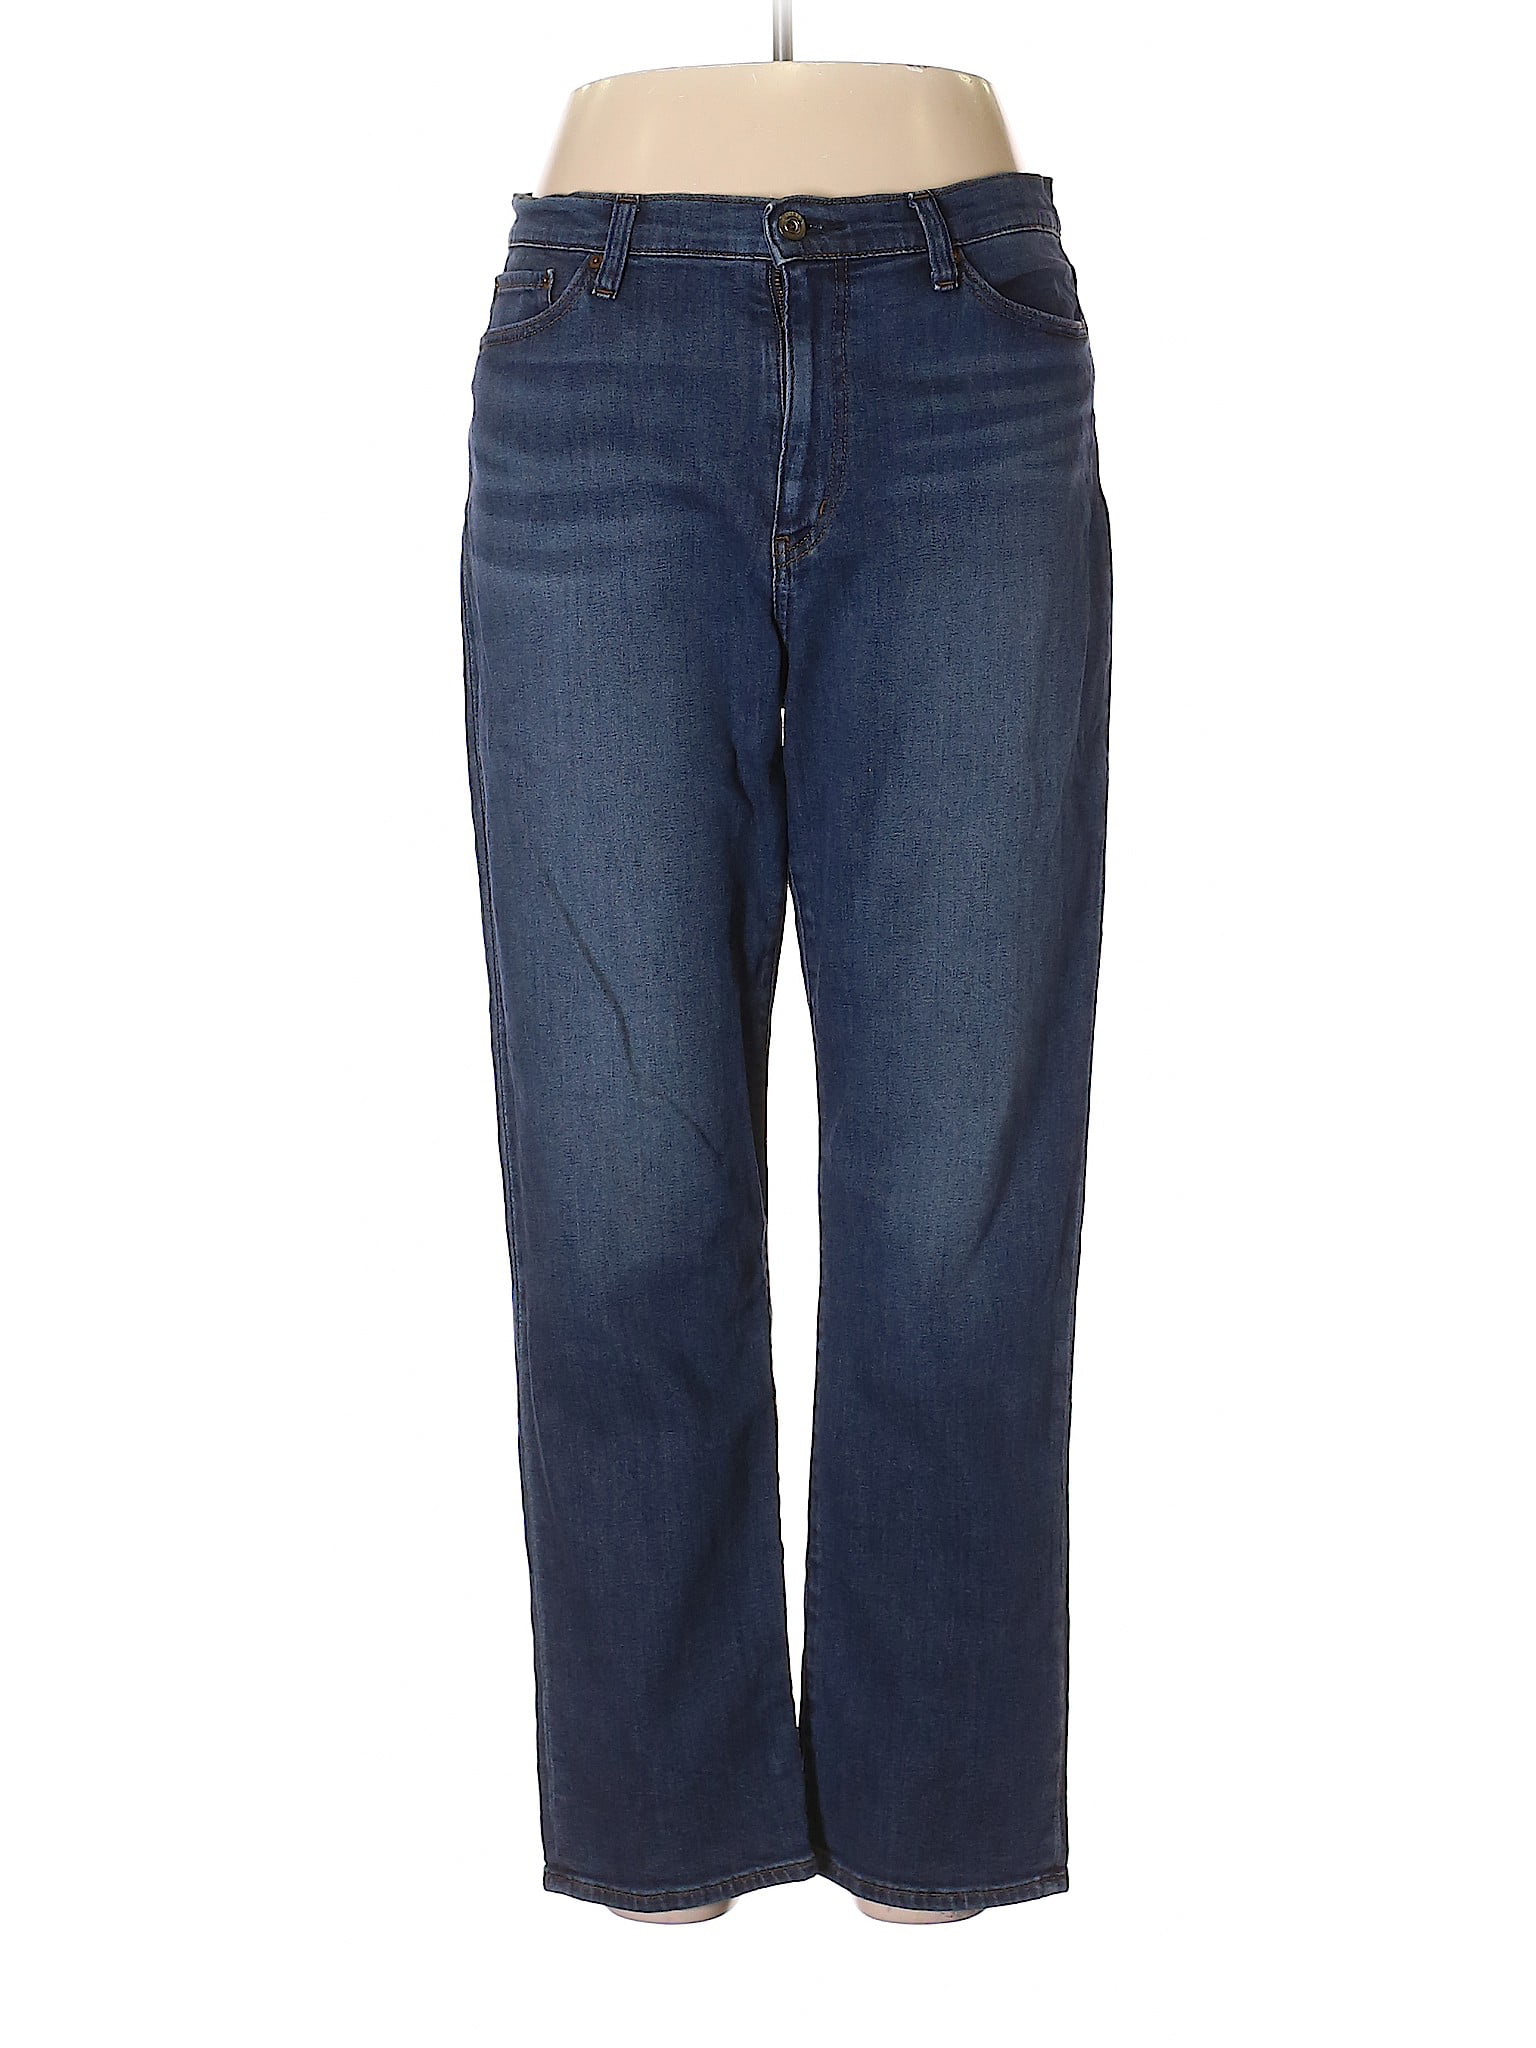 Uniqlo - Pre-Owned Uniqlo Women's Size 32W Jeans - Walmart.com ...